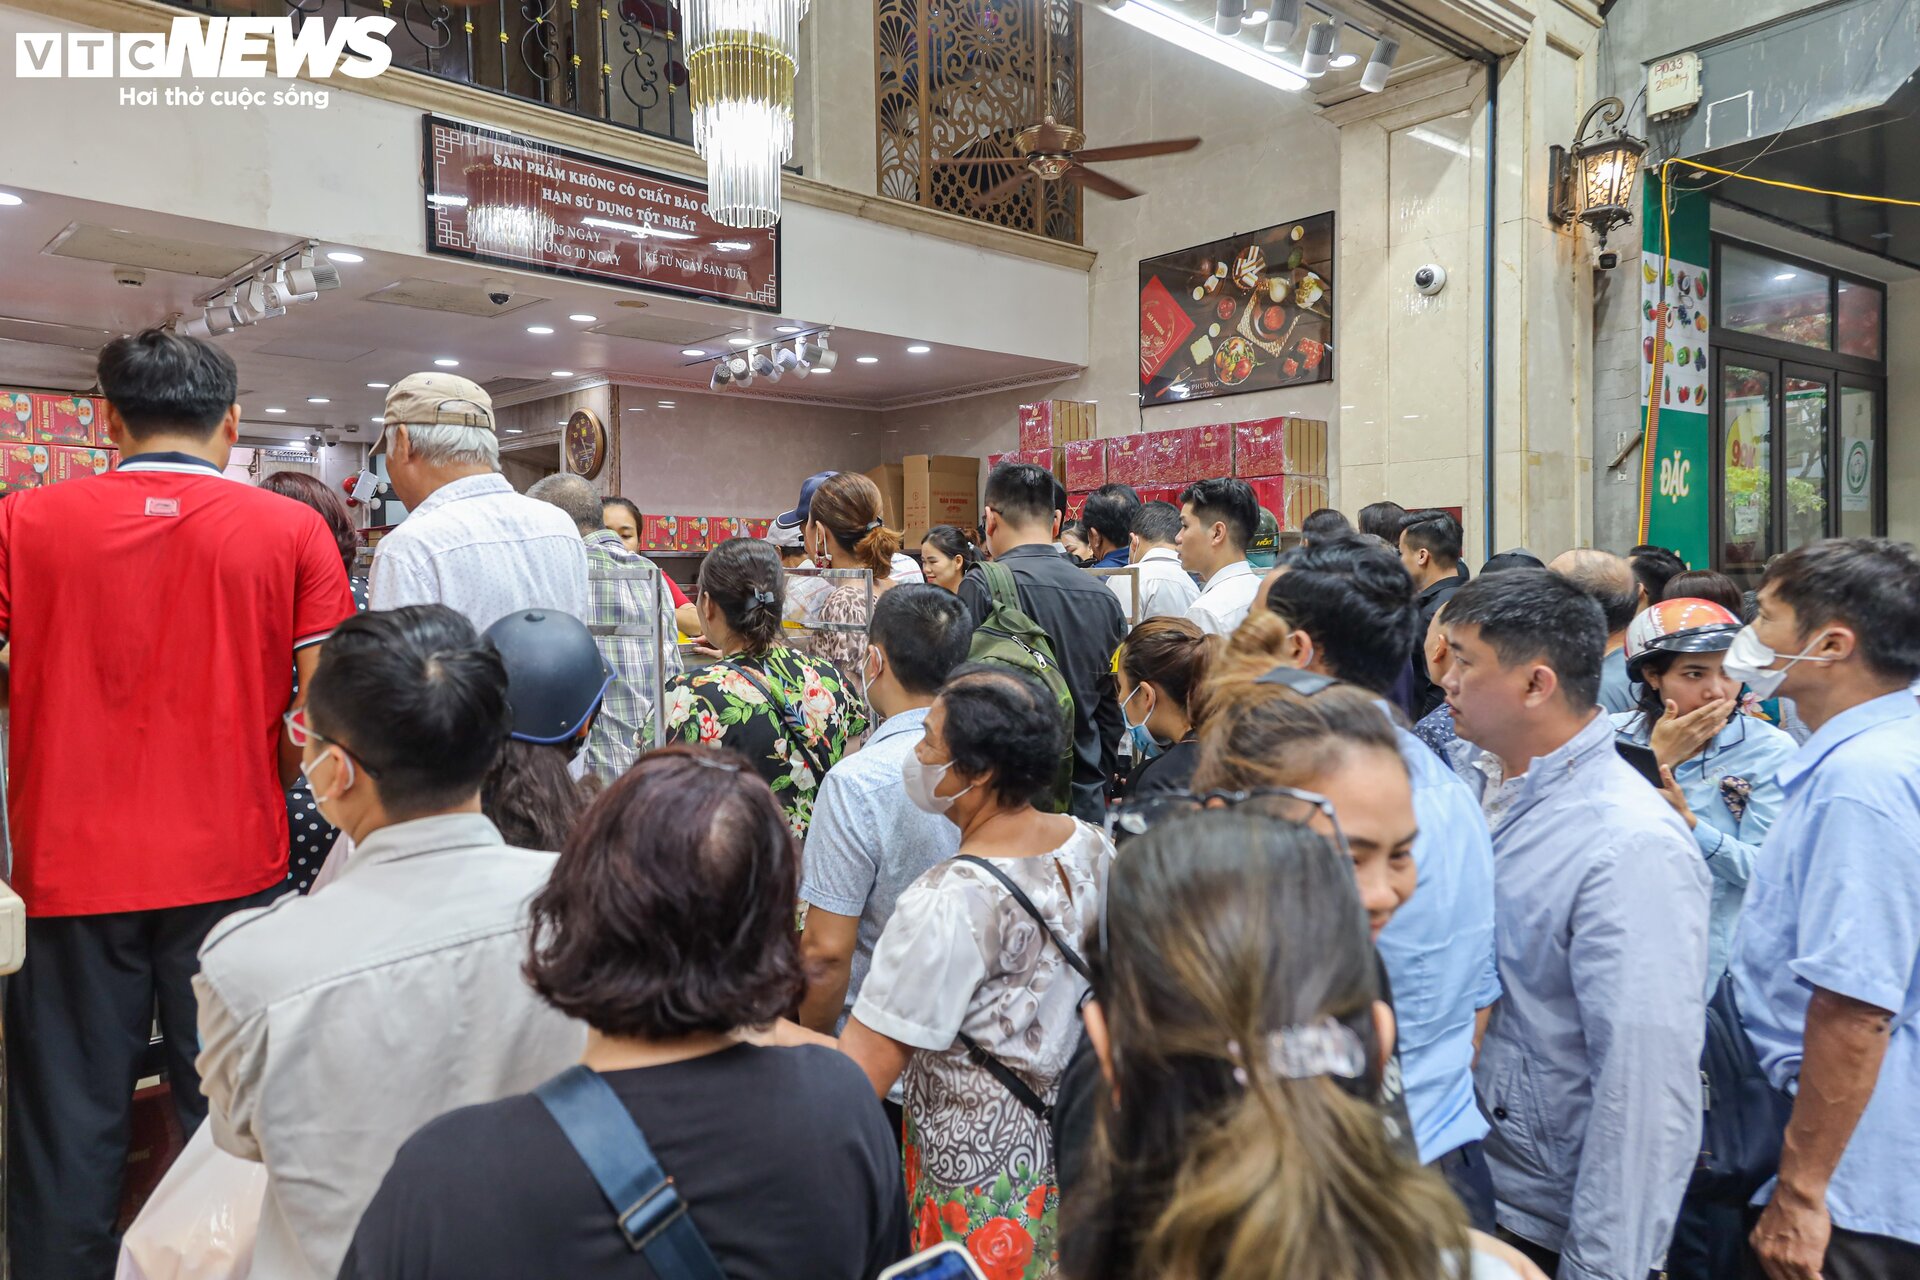 Hàng trăm người xếp hàng chờ mua bánh trung thu ở Hà Nội - 17